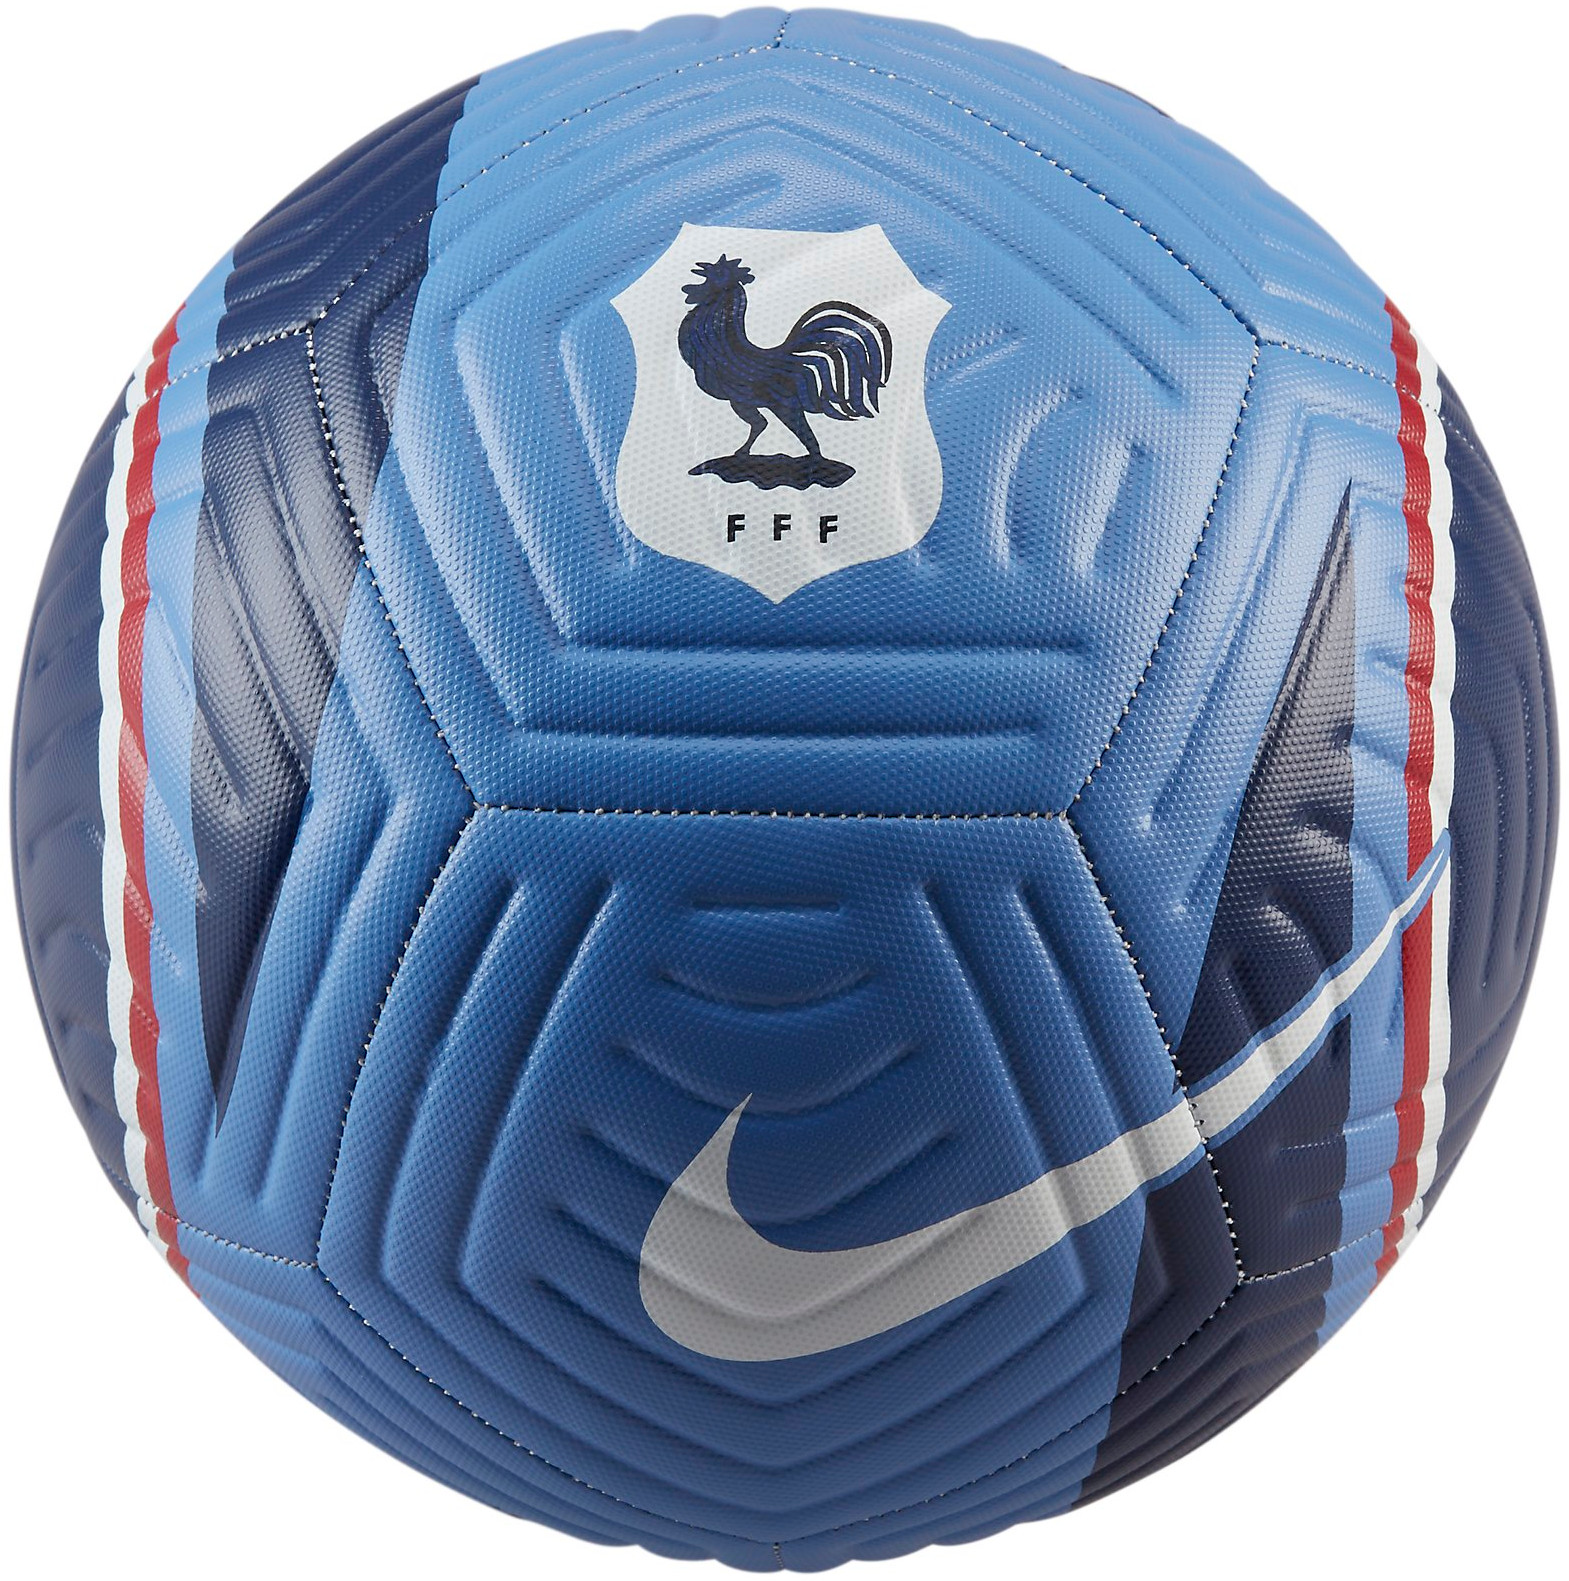 Balance ball Nike FFF NK ACADEMY - SU23